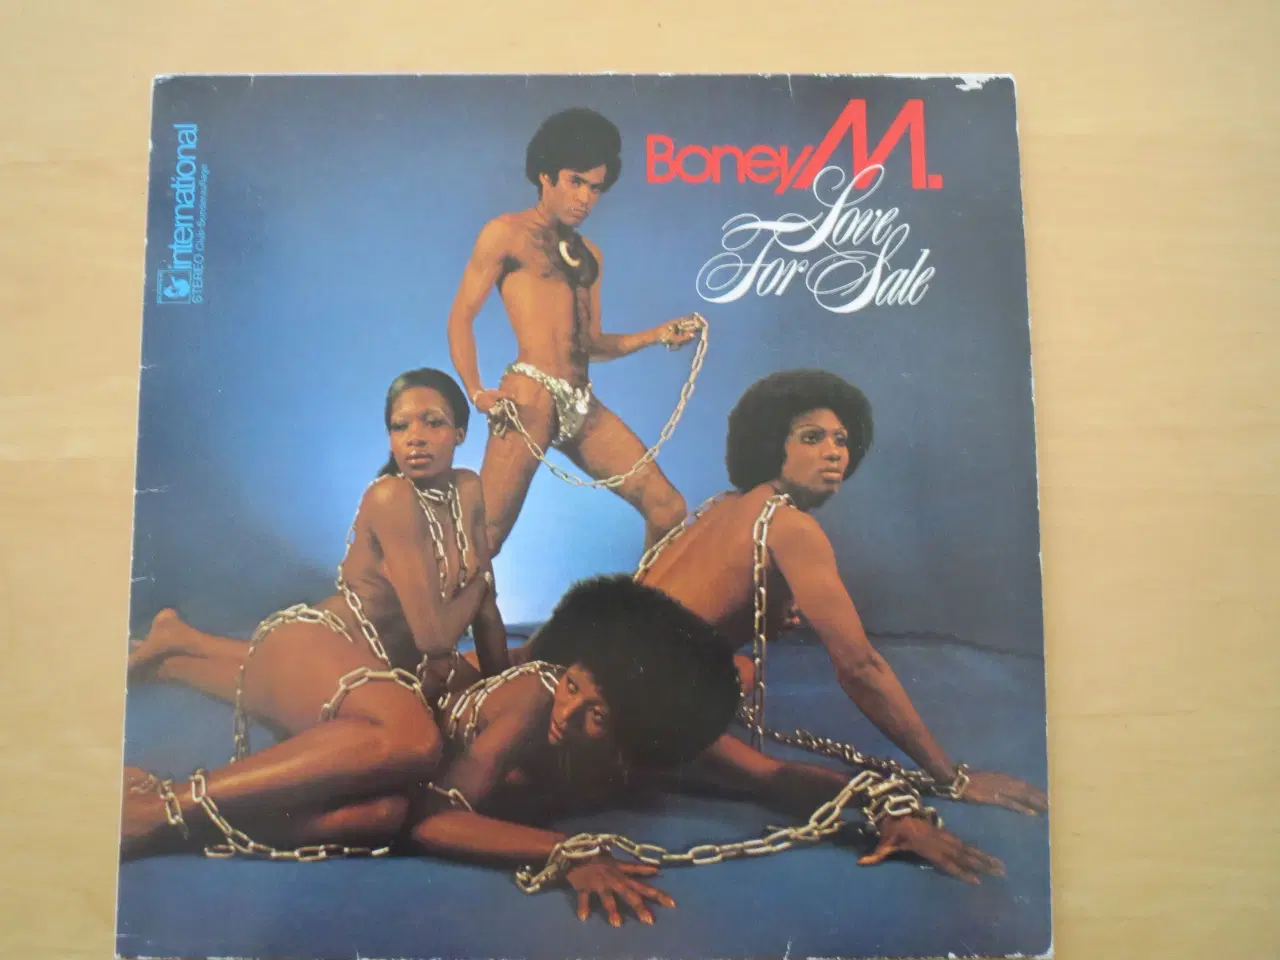 Billede 1 - Boney M - Love for sale - LP